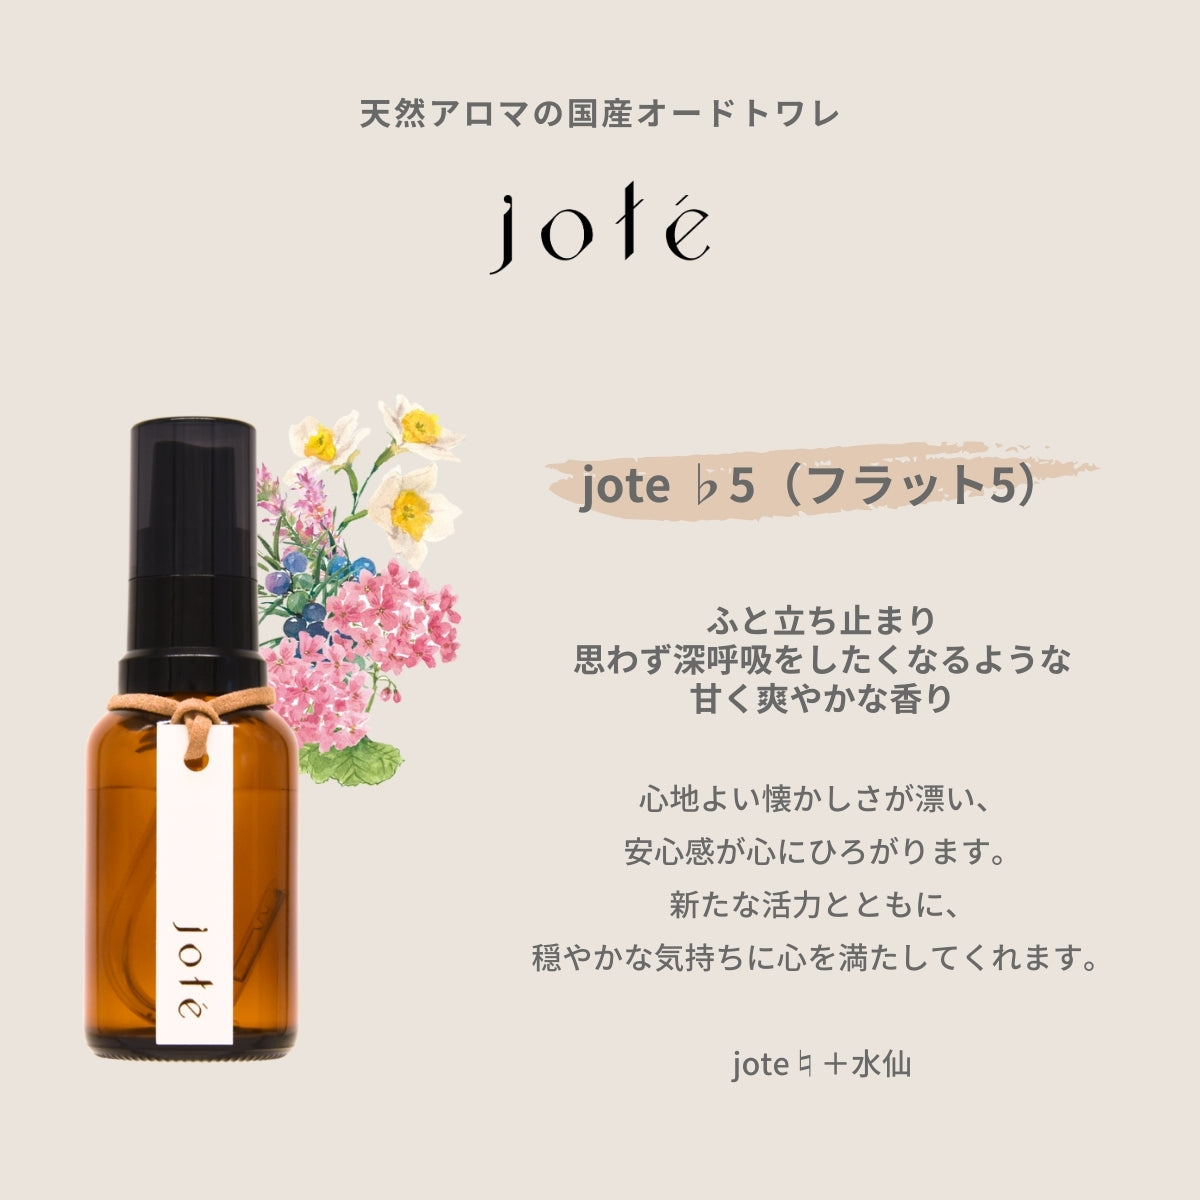 【 Kind set 】Perfume やさしい香りお試し5ml 3本セット